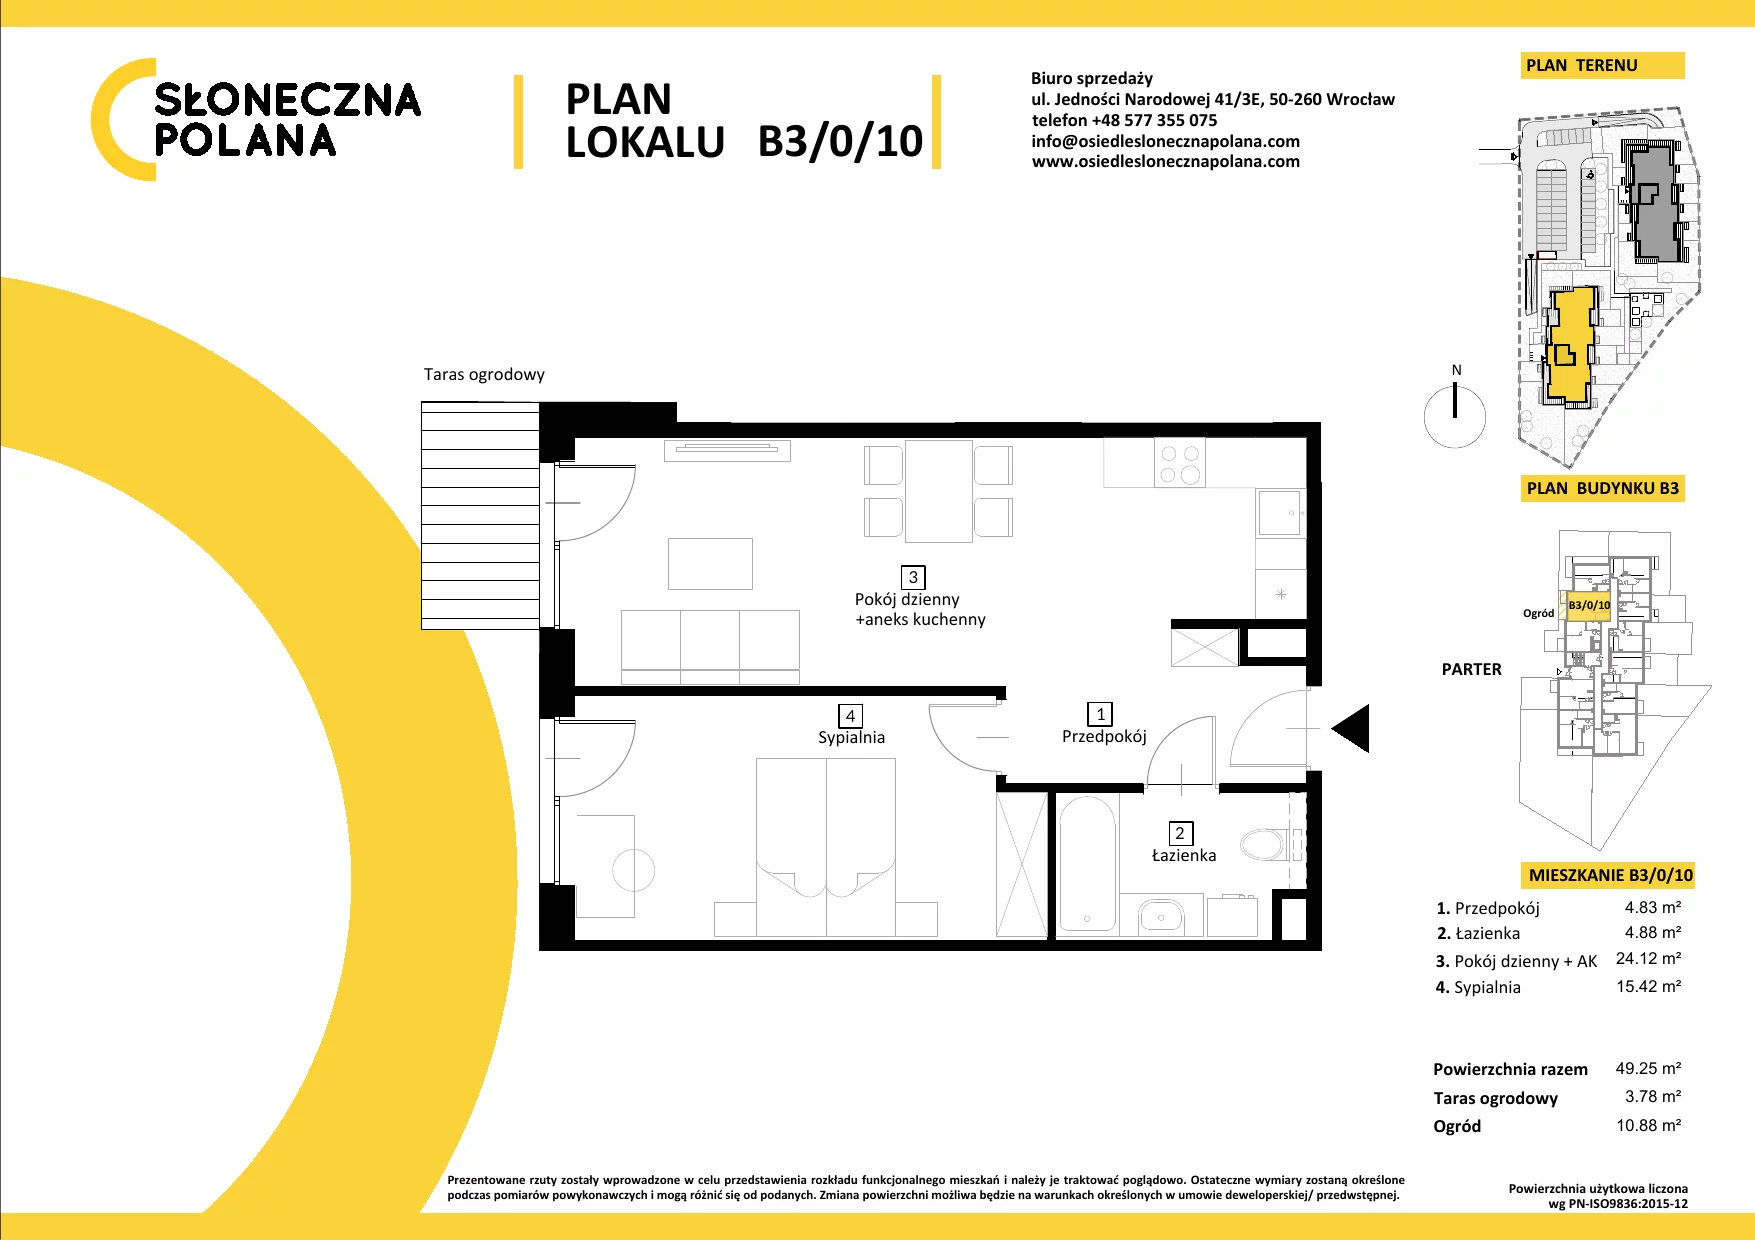 Mieszkanie 49,25 m², parter, oferta nr B3/0/10, Słoneczna Polana, Kudowa-Zdrój, ul. Bluszczowa